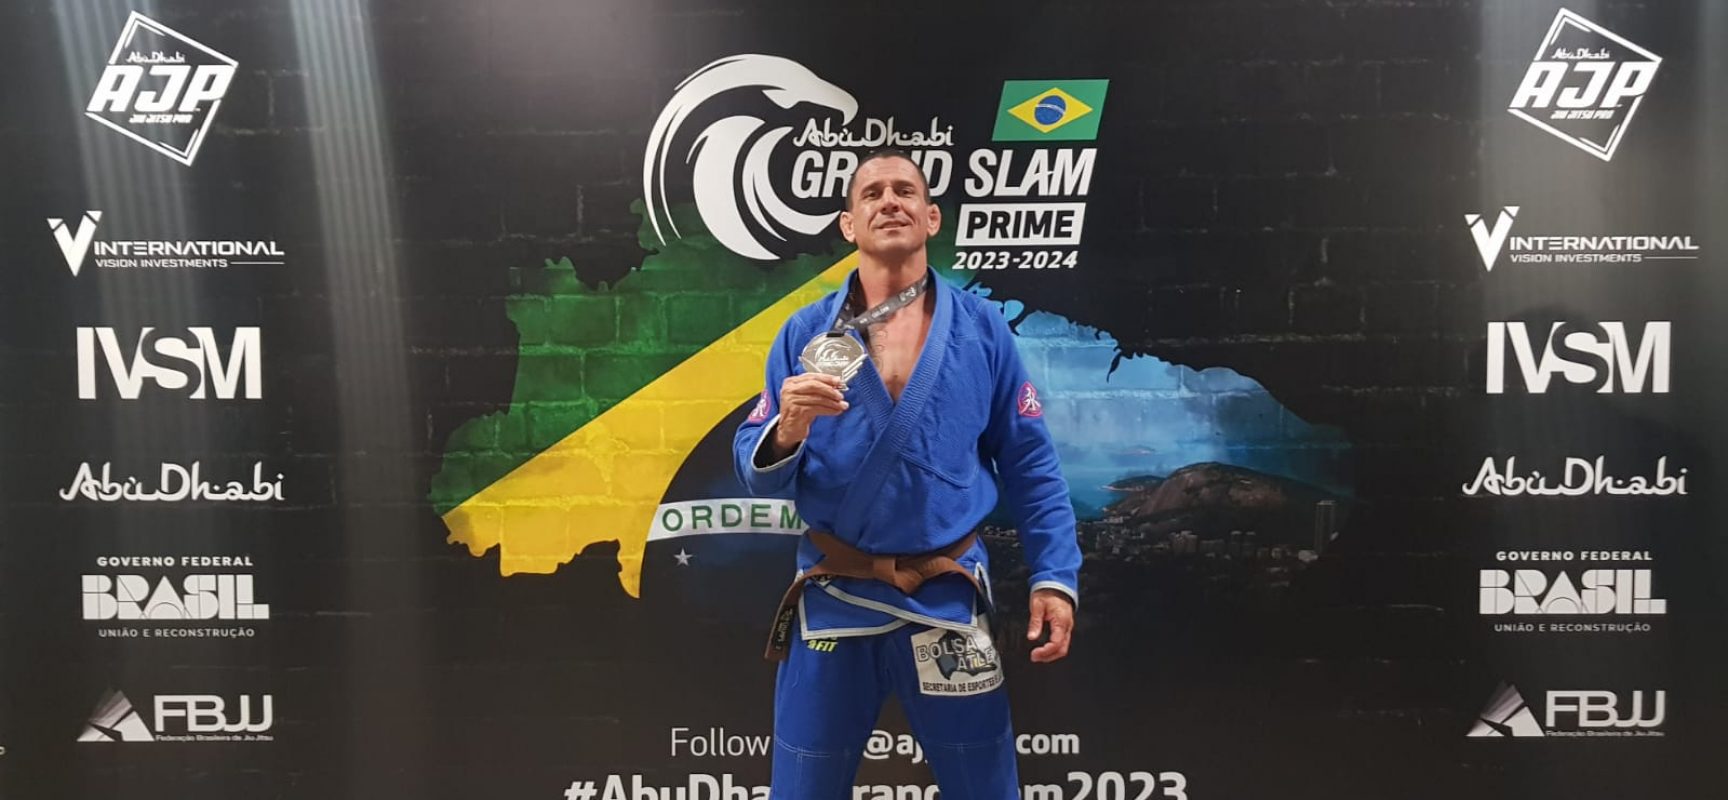 Atleta Rodrigo Garcia se consagra Vice-Campeão no campeonato Abu Dhabi Grand Slam no Rio de Janeiro